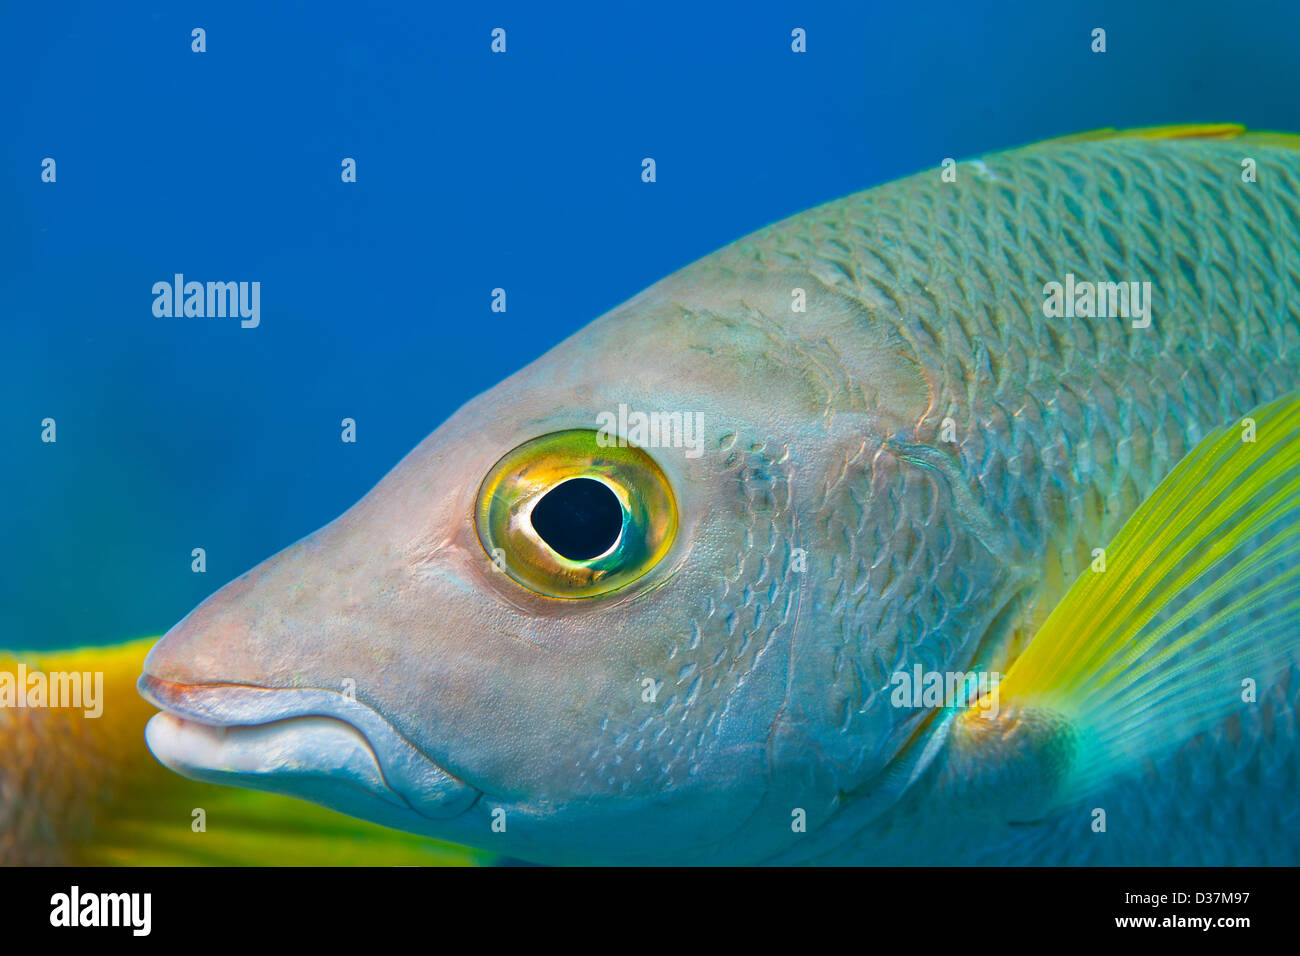 Close up of fish swimming underwater Stock Photo